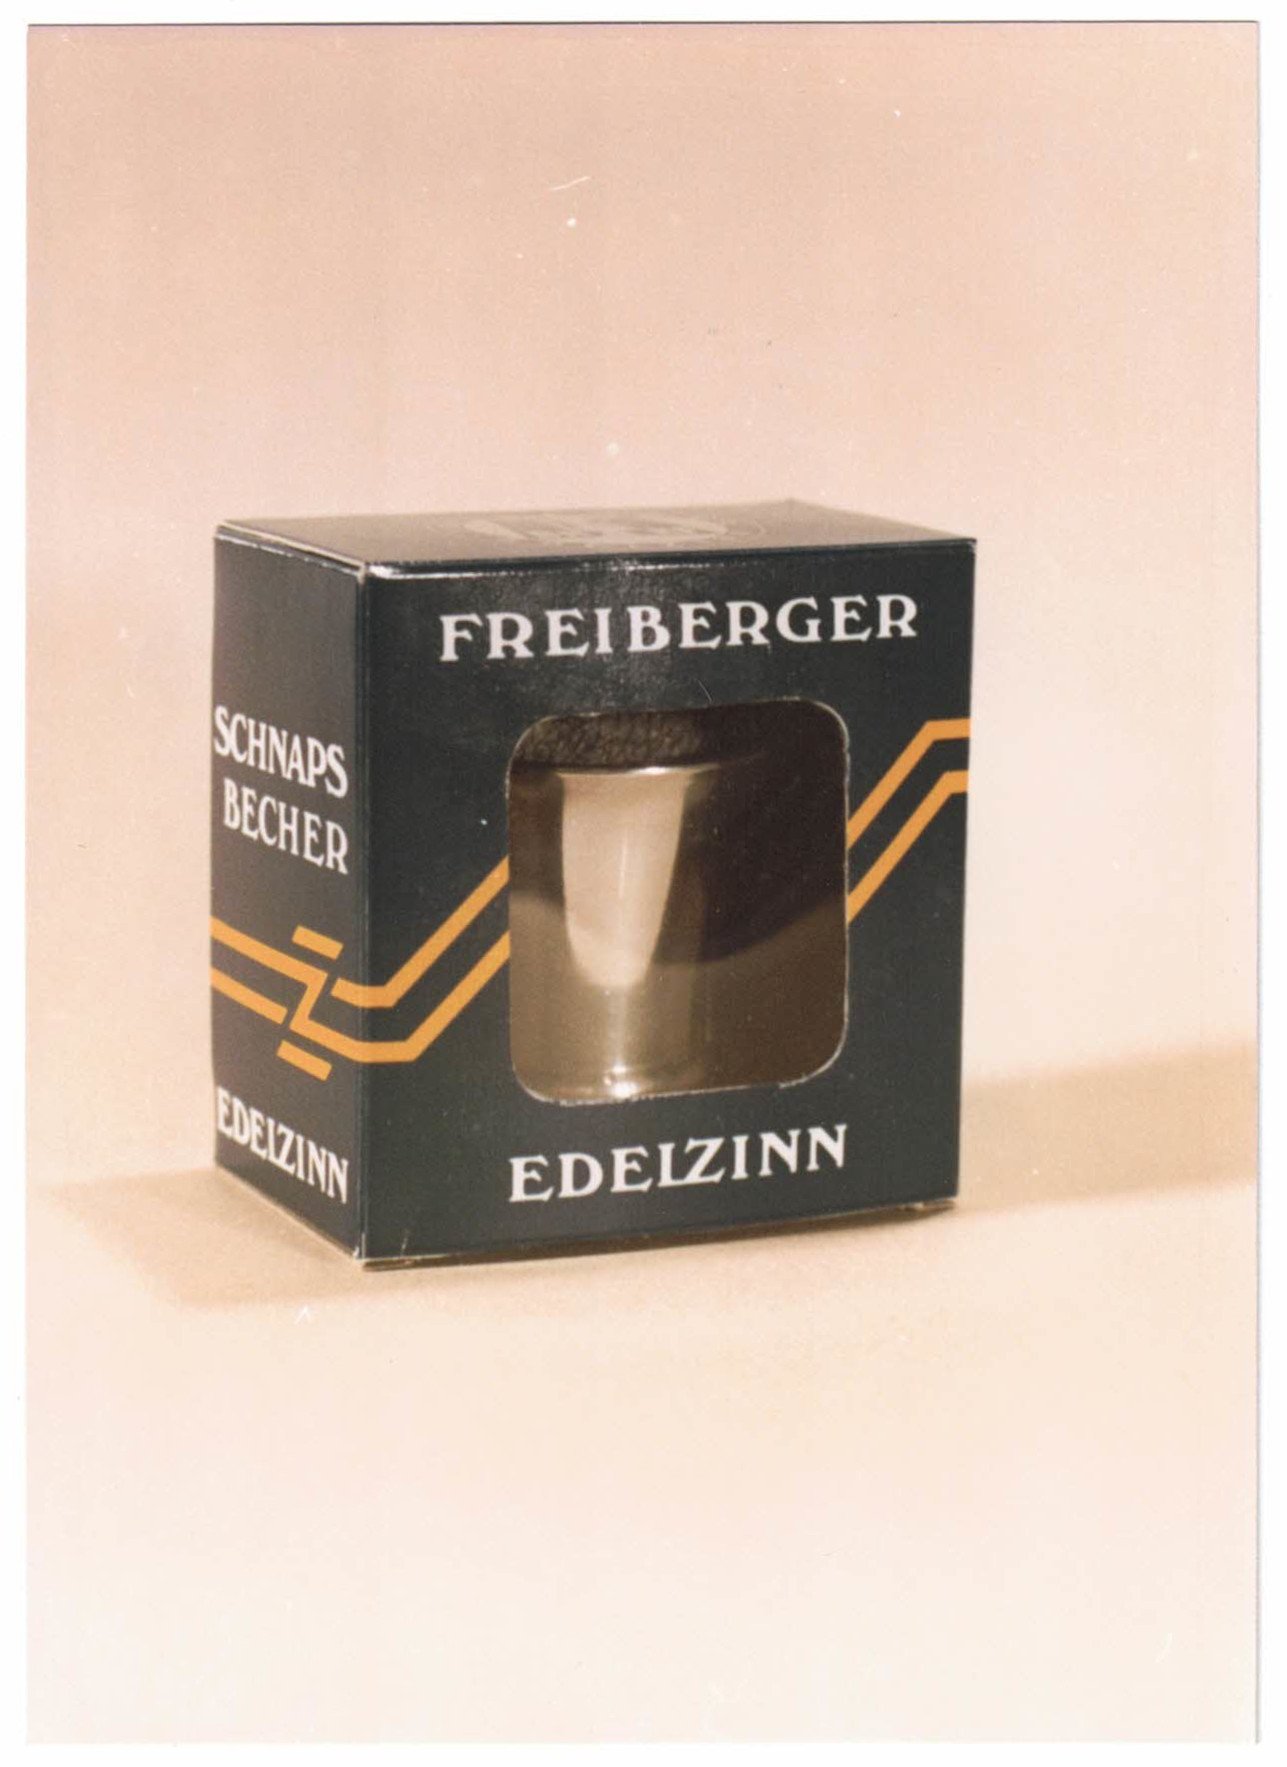 Fotografie eines Schnapsbechers der Marke "Freiberger Edelzinn" (Saxonia-Freiberg-Stiftung CC BY-NC-SA)